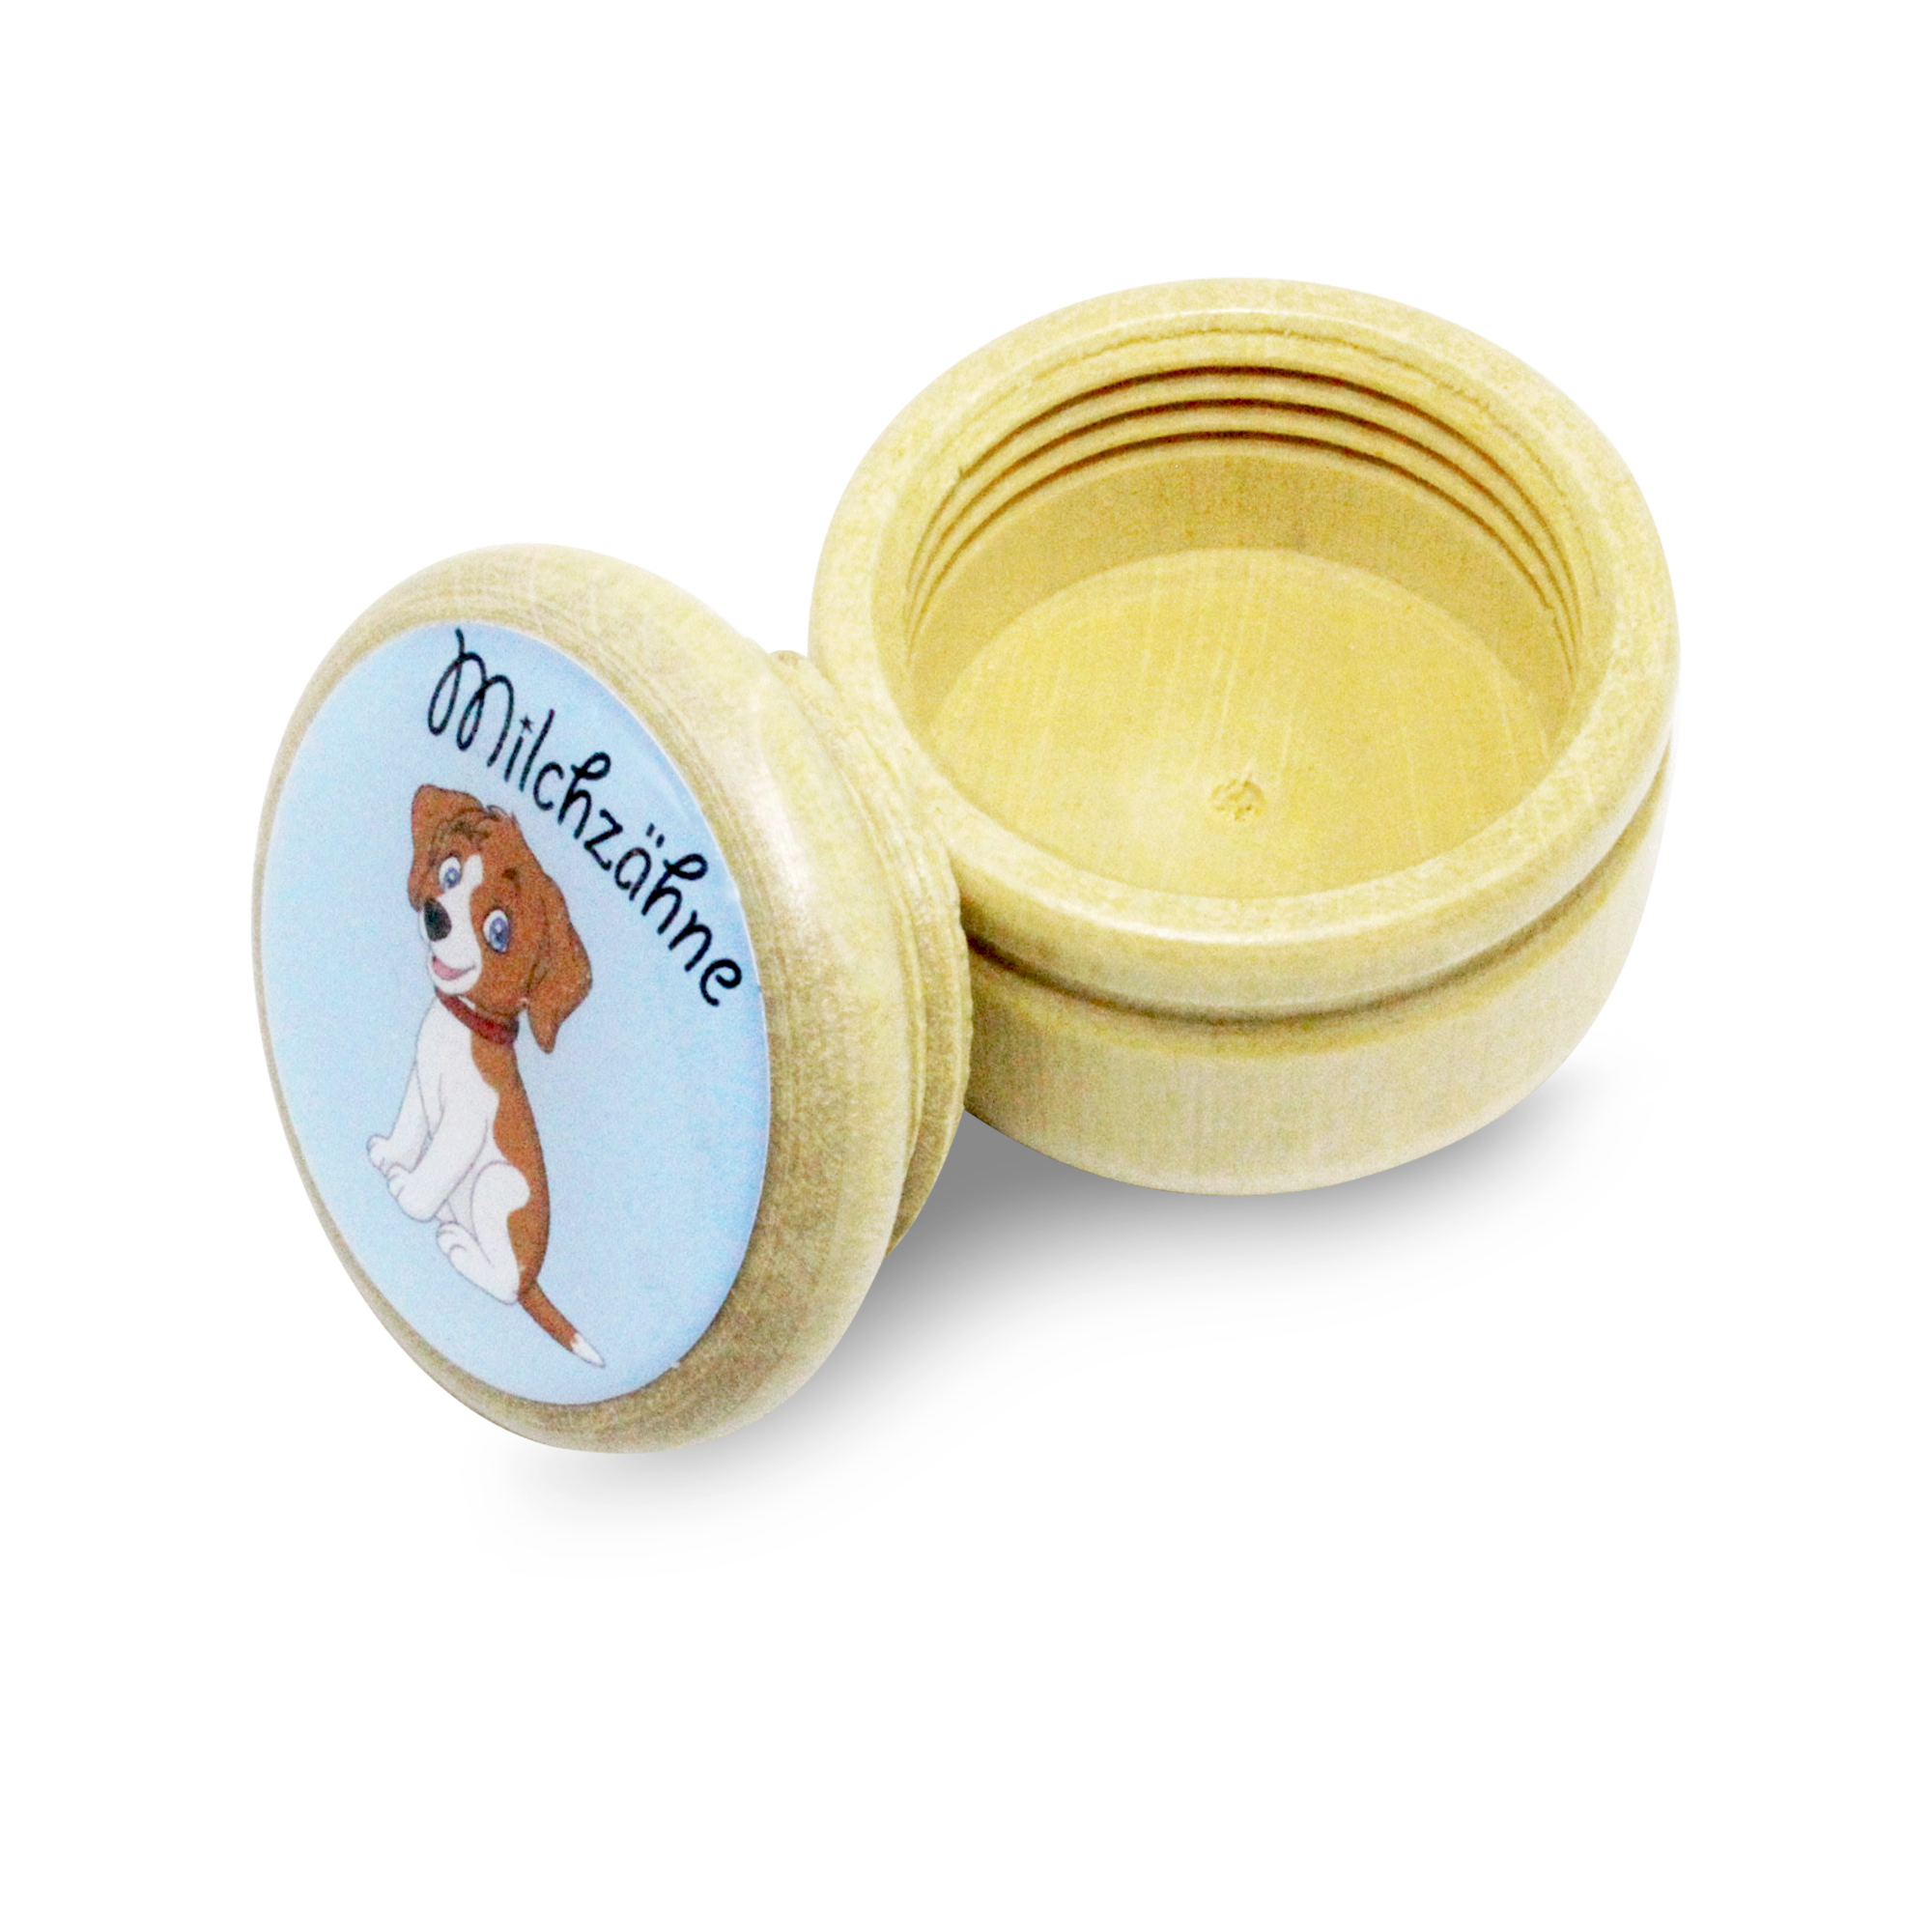 Milchzahndose Hund Zahndose Milchzähne Bilderdose aus Holz mit Drehverschluss 44 mm ( Hund )- 7018